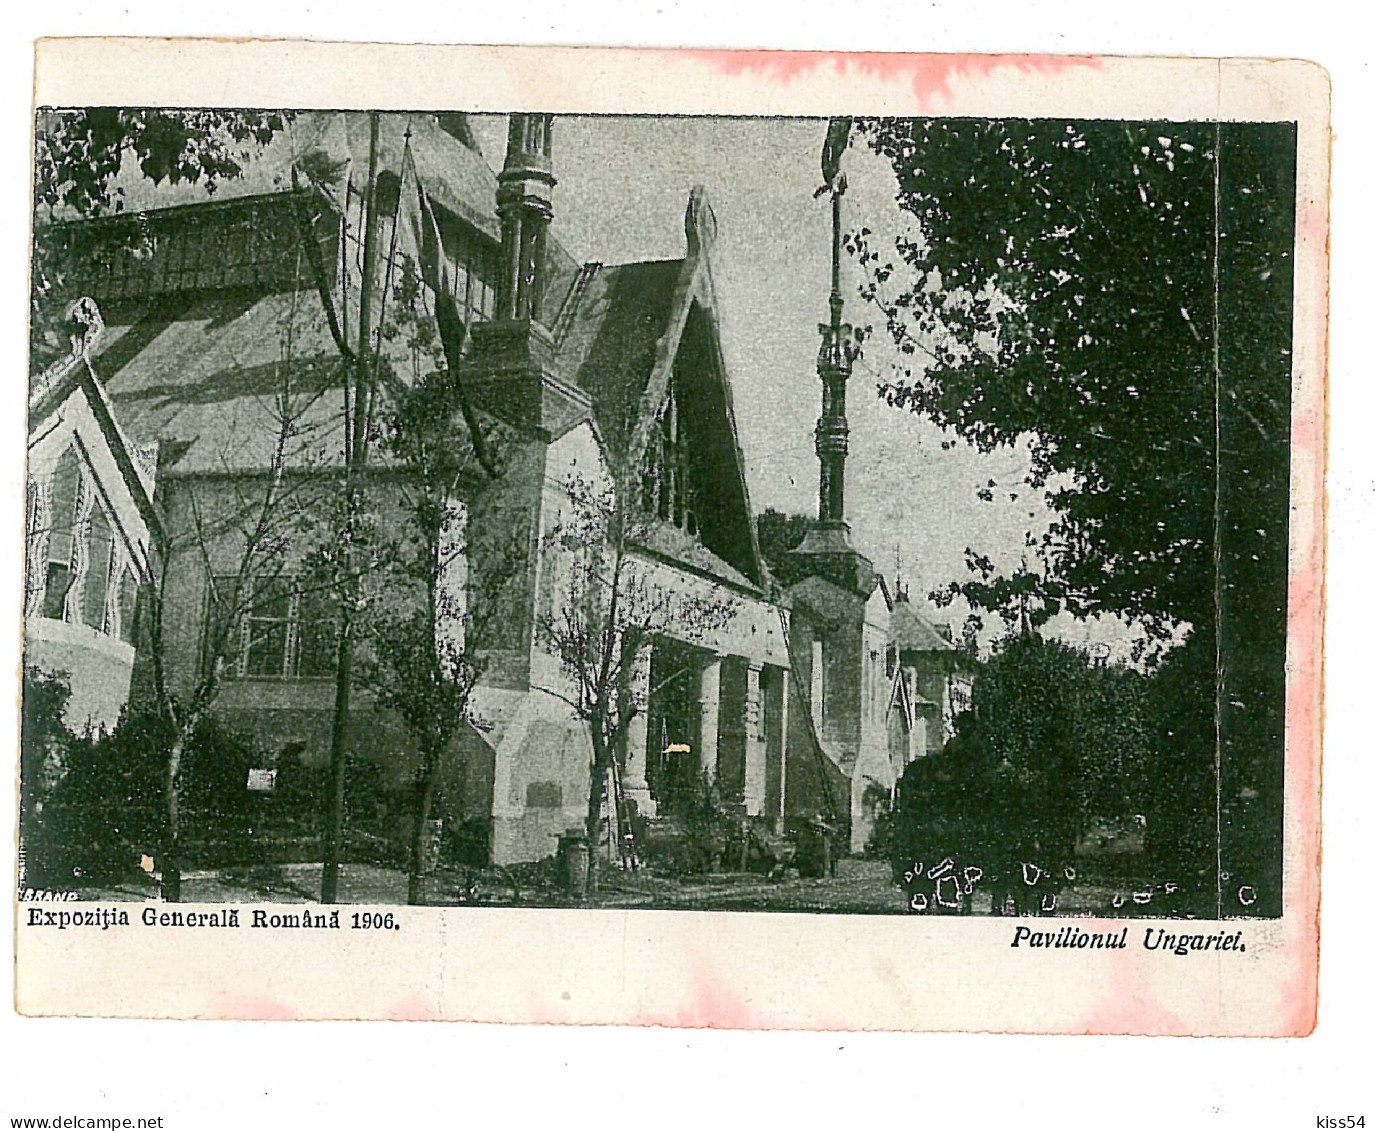 RO 45 - 9047 BUCURESTI, Expozitia Gen. Pavilionul Ungariei, Romania - Old Postcard - Unused - 1906 - Roumanie